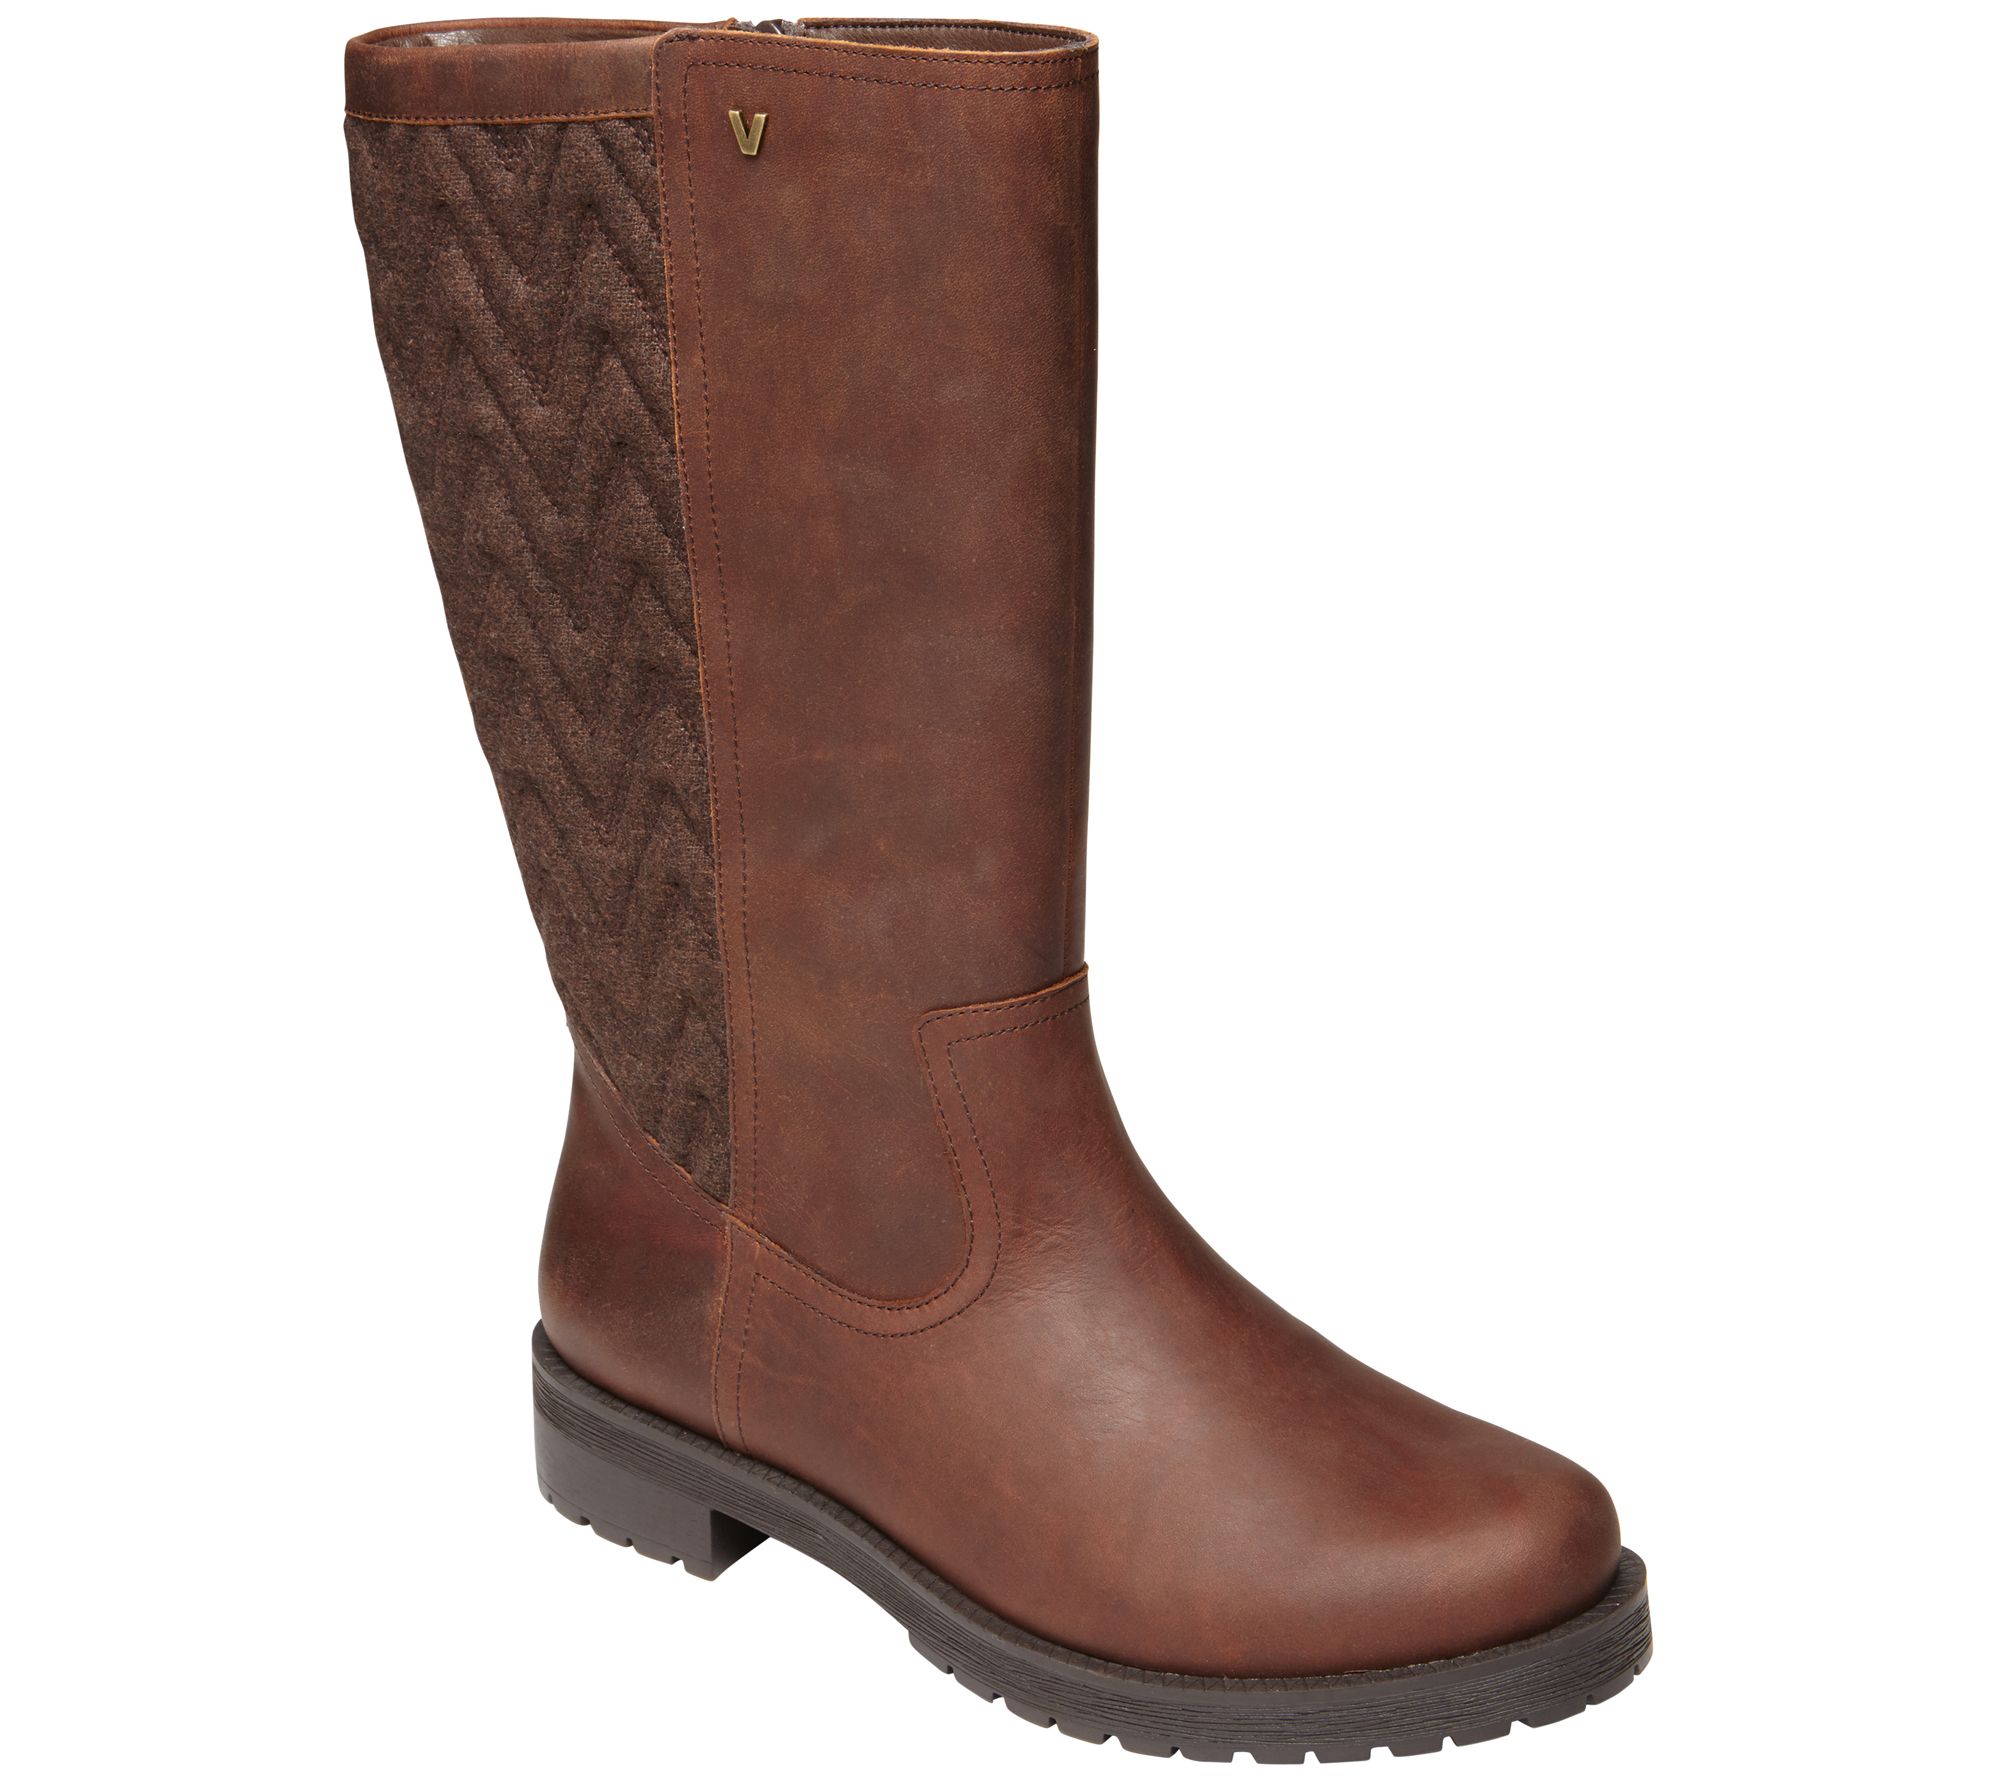 Vionic Leather Mid-Calf Boots - Aurora - QVC.com